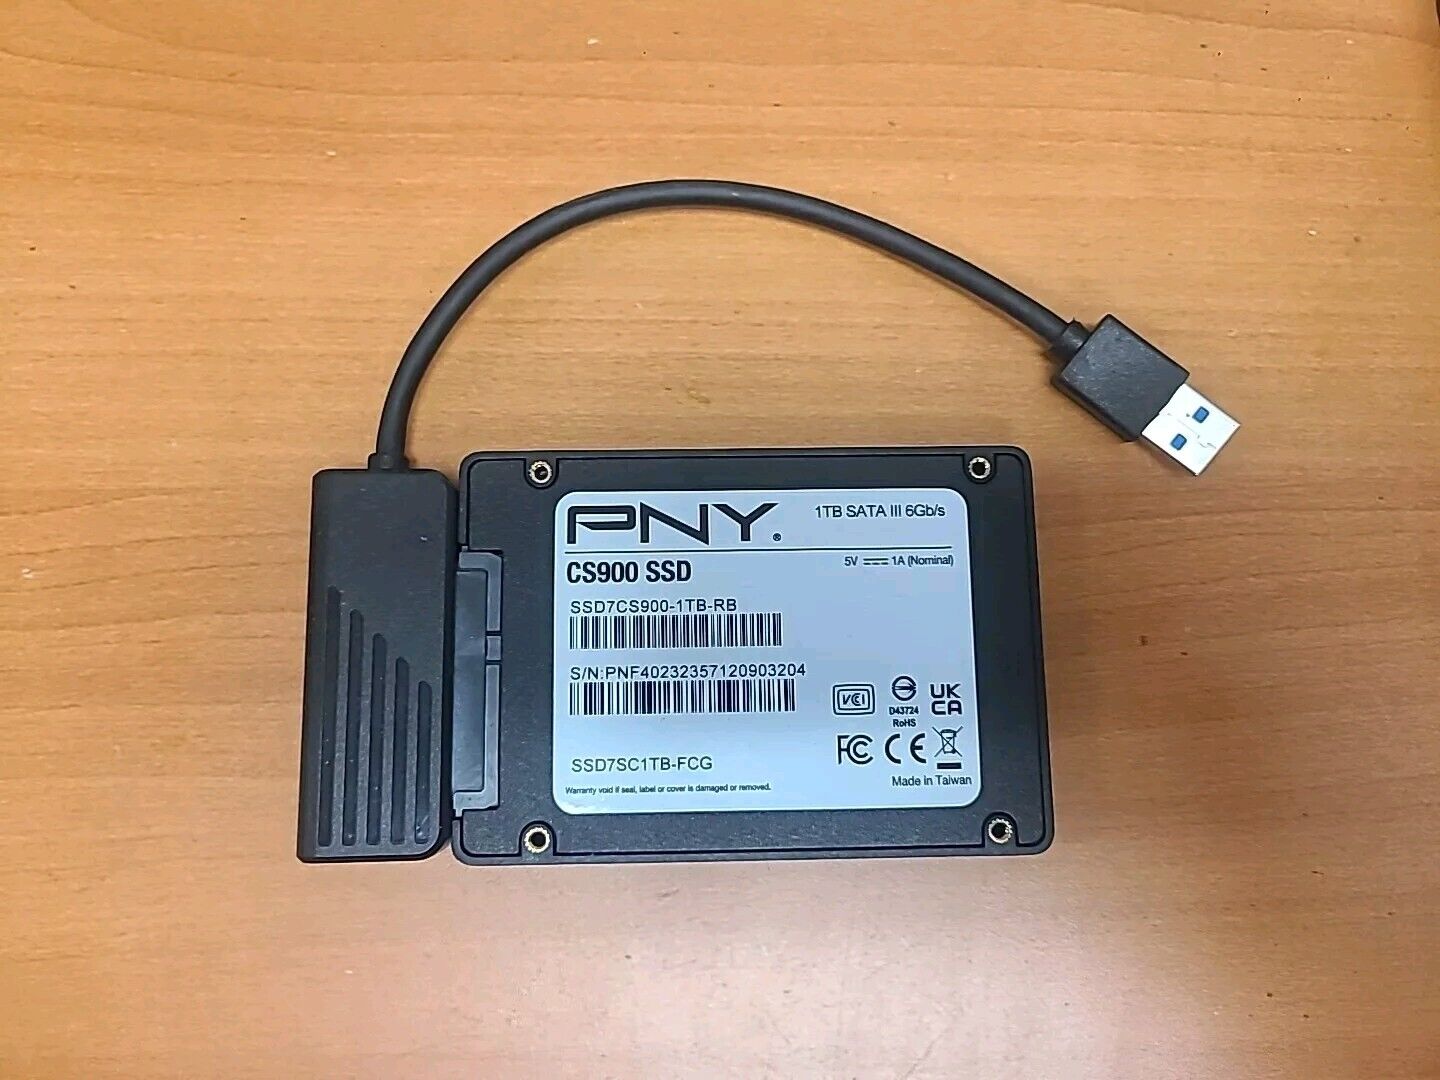 PNY CS900 SATA III 6Gb/S Solid State Drive (SSD7CS900-1TB-RB)